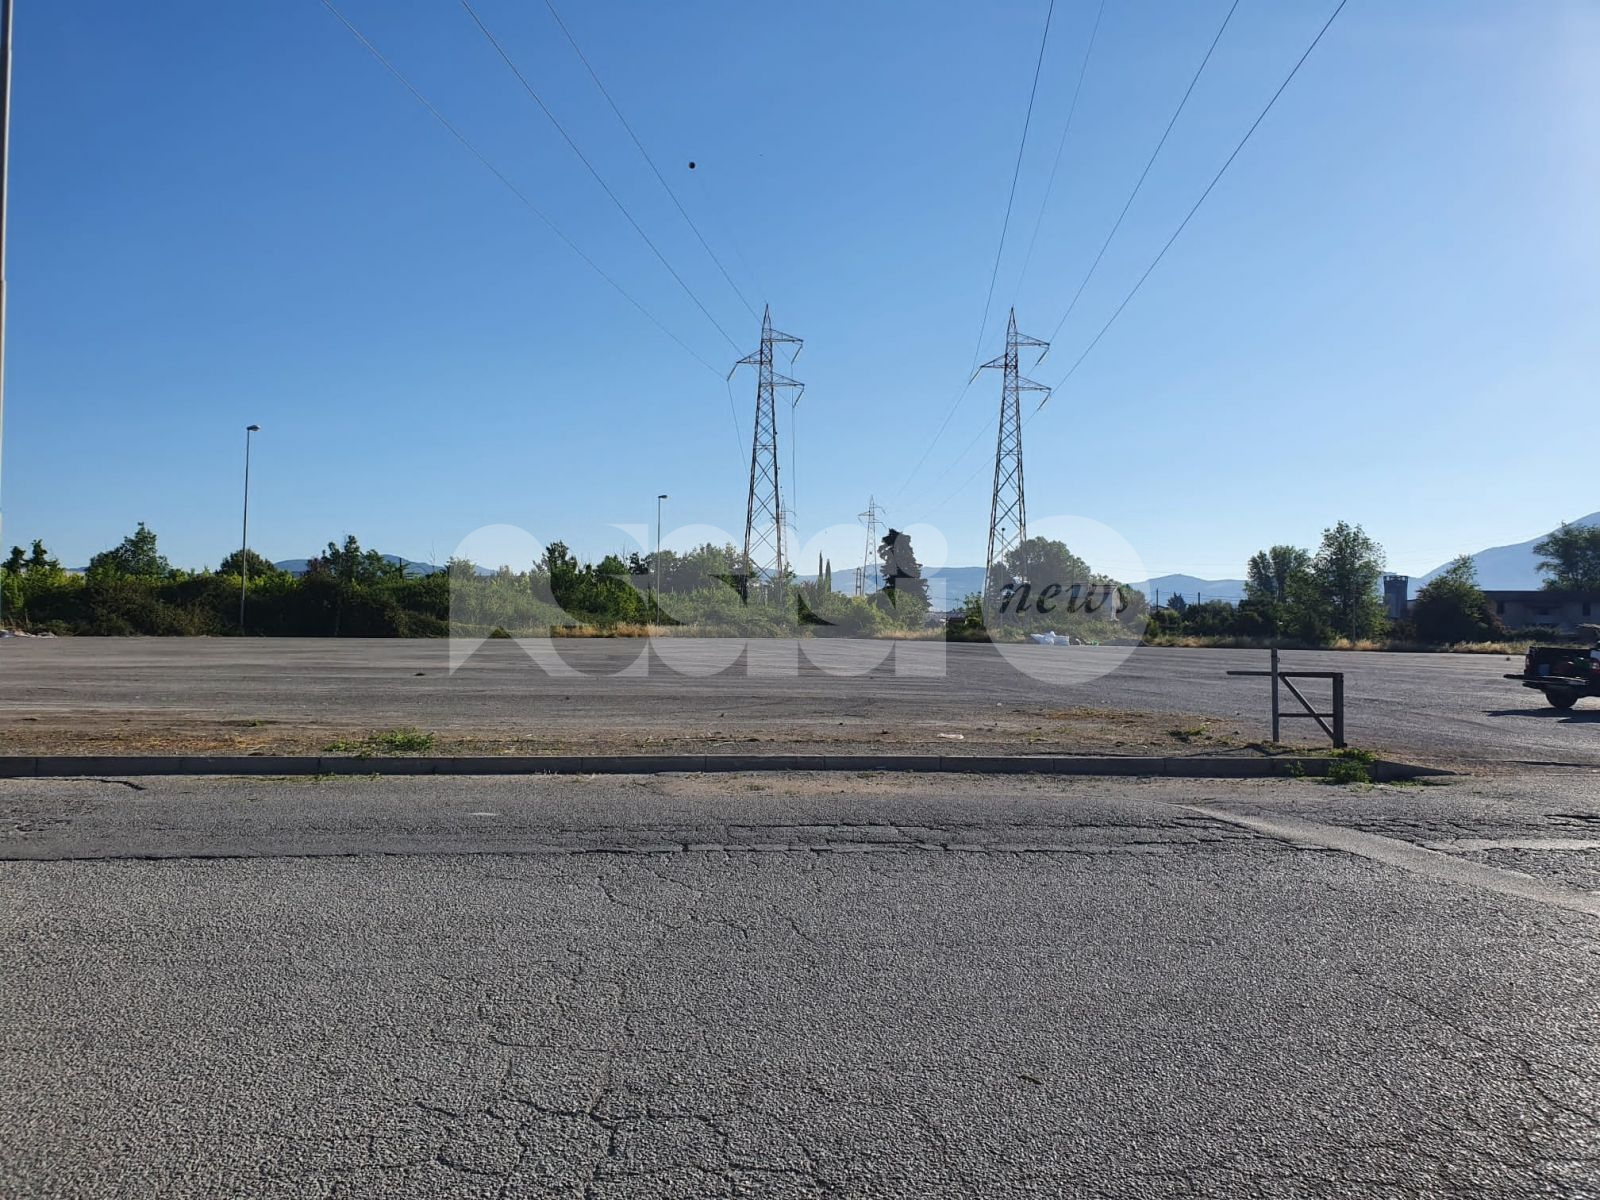 Parcheggio della zona industriale di Santa Maria finalmente ripulito dopo anni di degrado (foto)